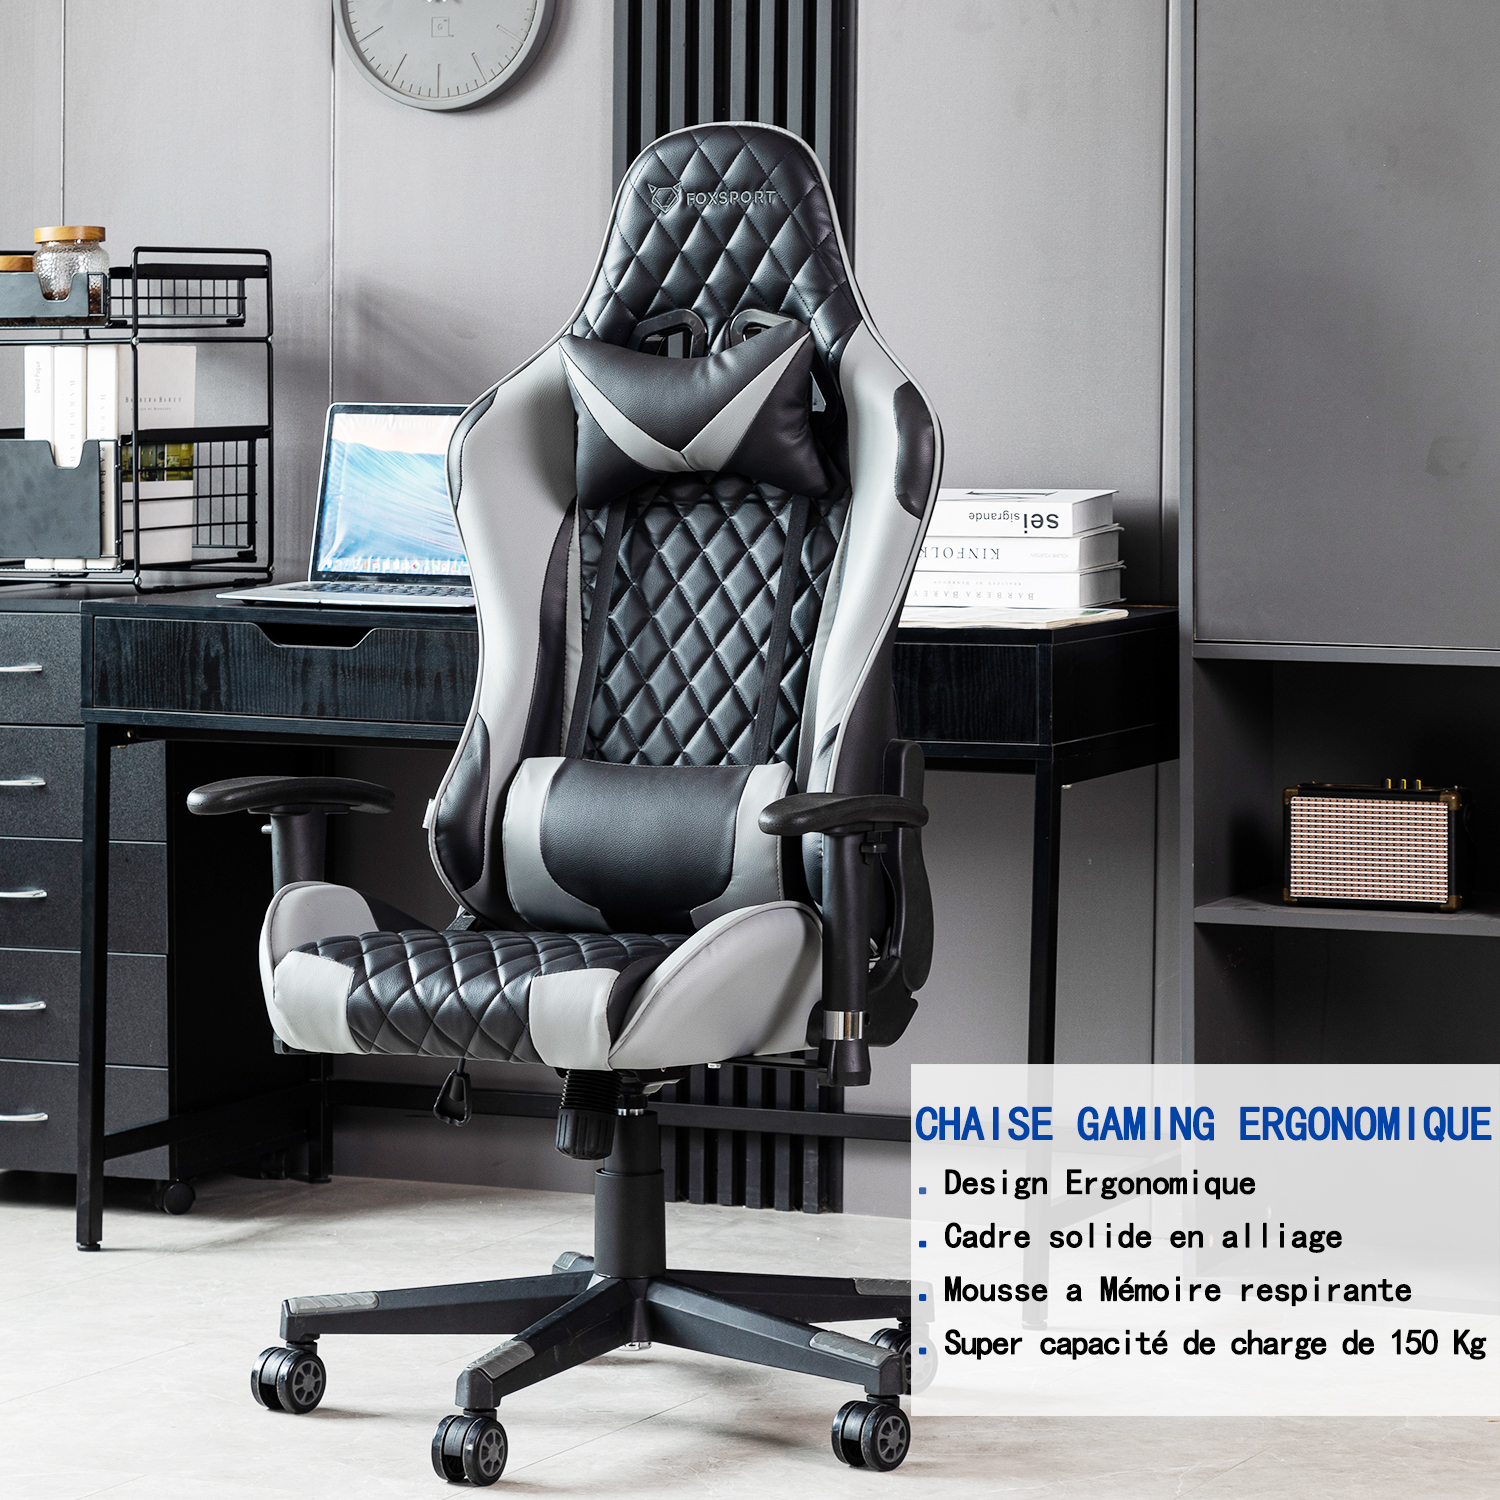 FOXSPORT Chaise de Gaming - E- Sports - Chaise de bureau avec oreiller  cervical et